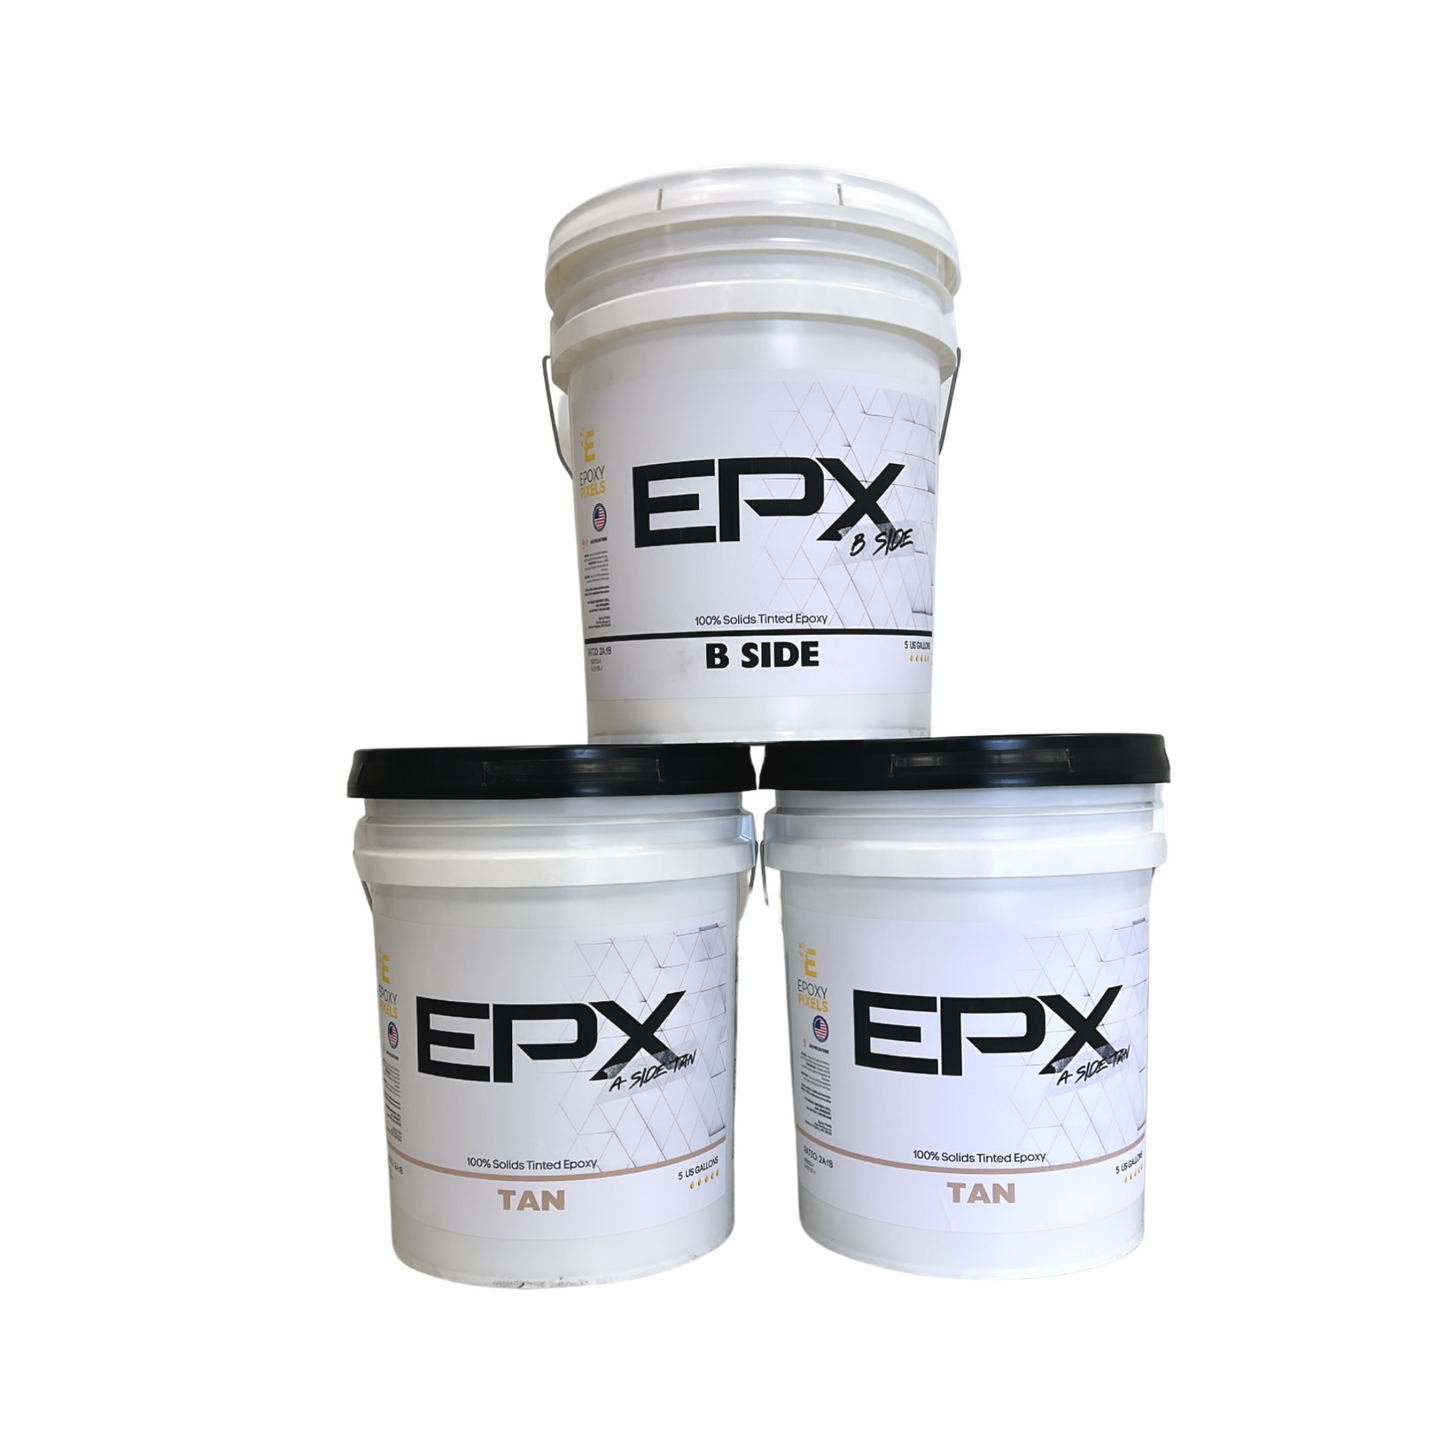 EPX Epoxy